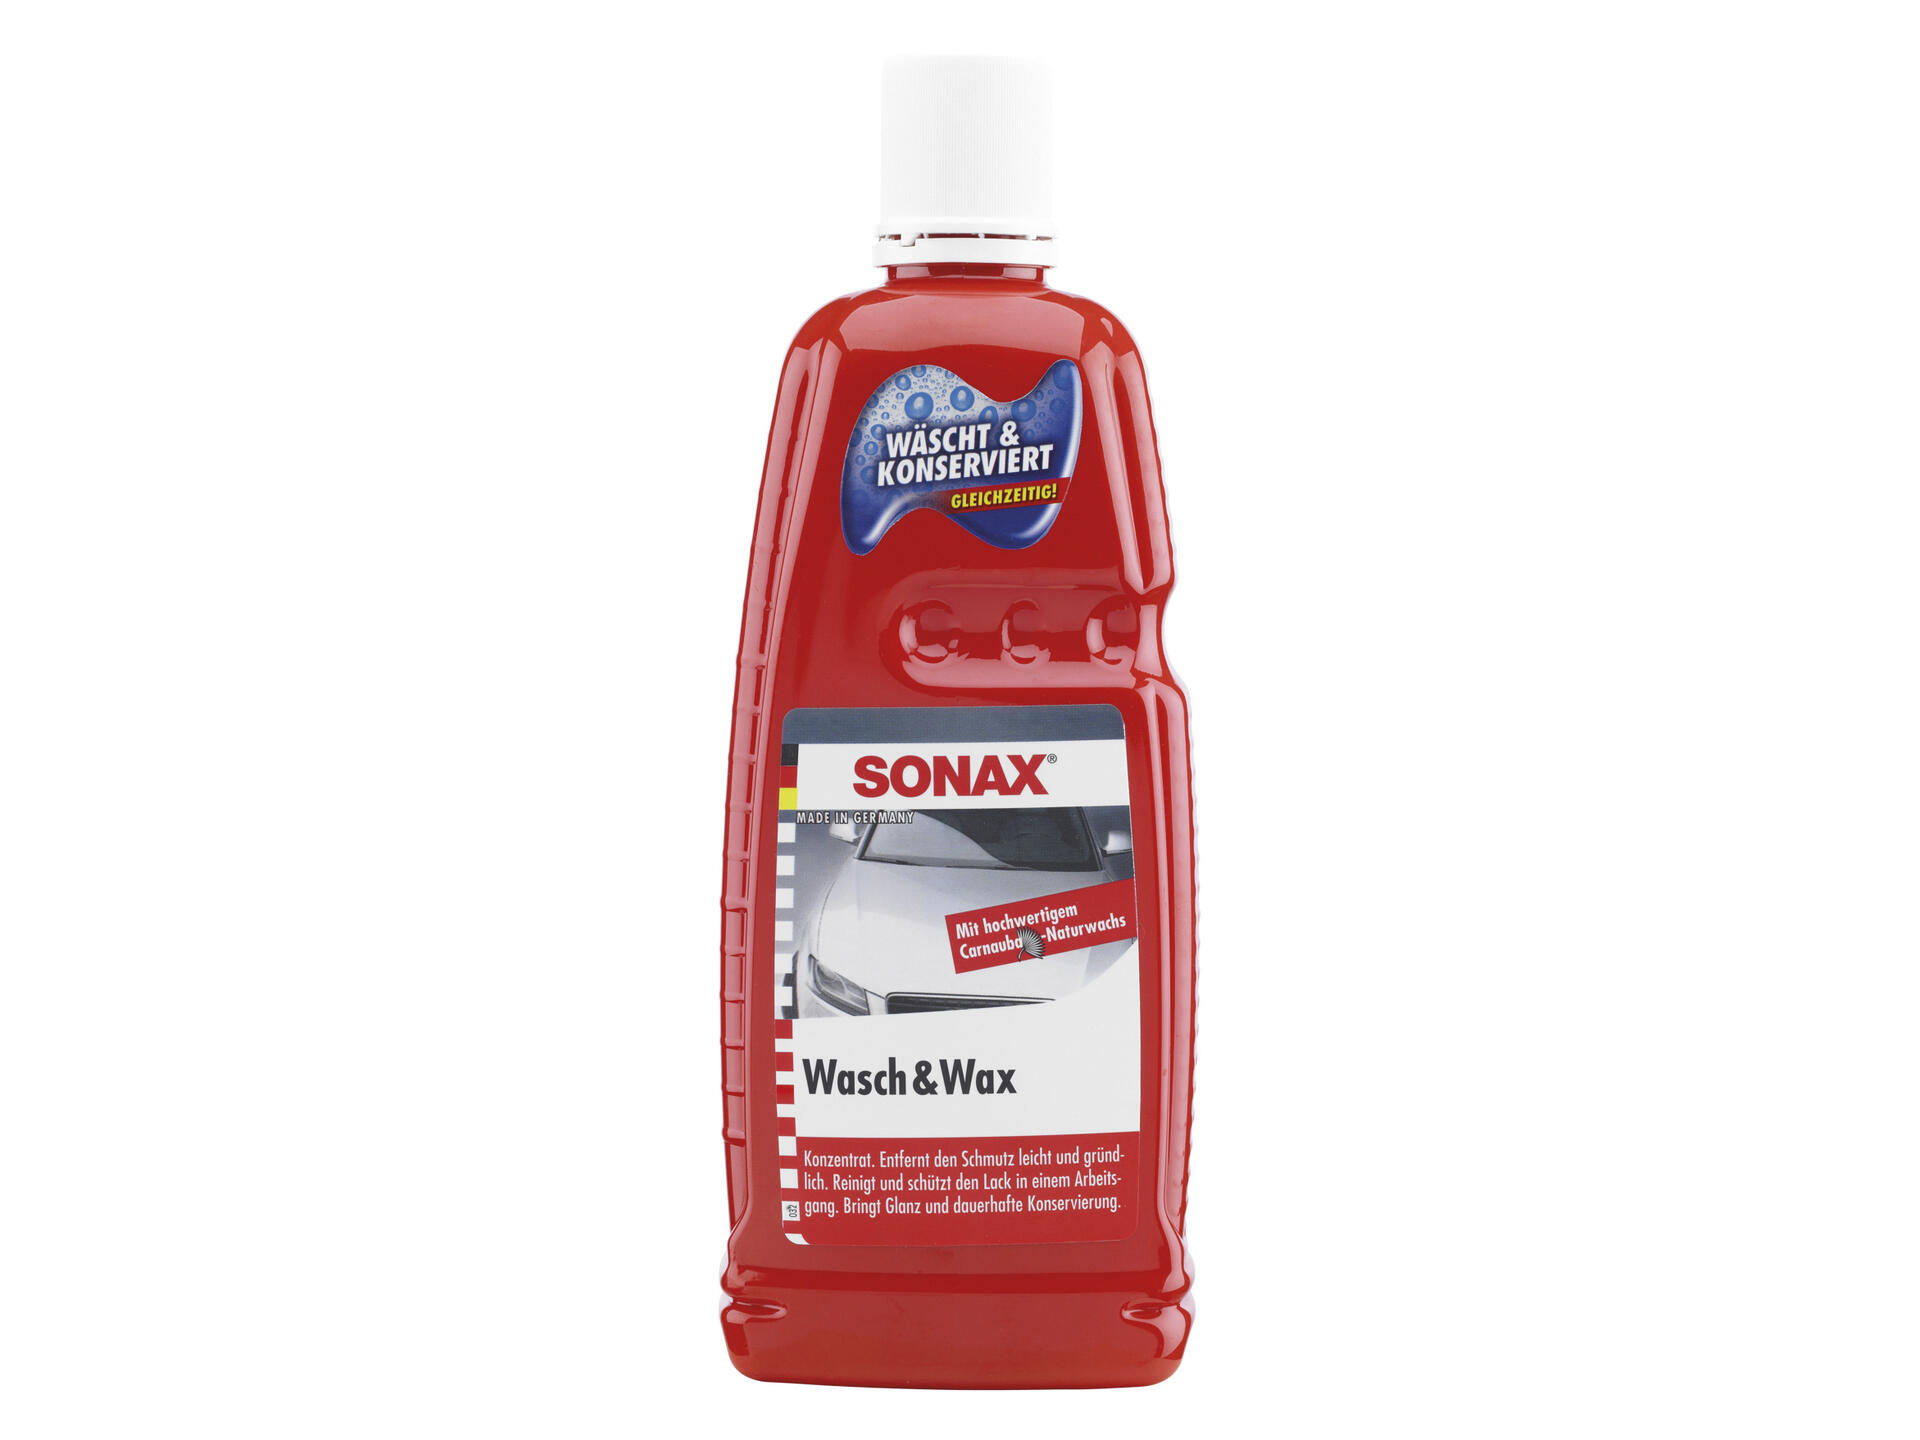 Sonax Wash & Wax shampooing voiture 1l